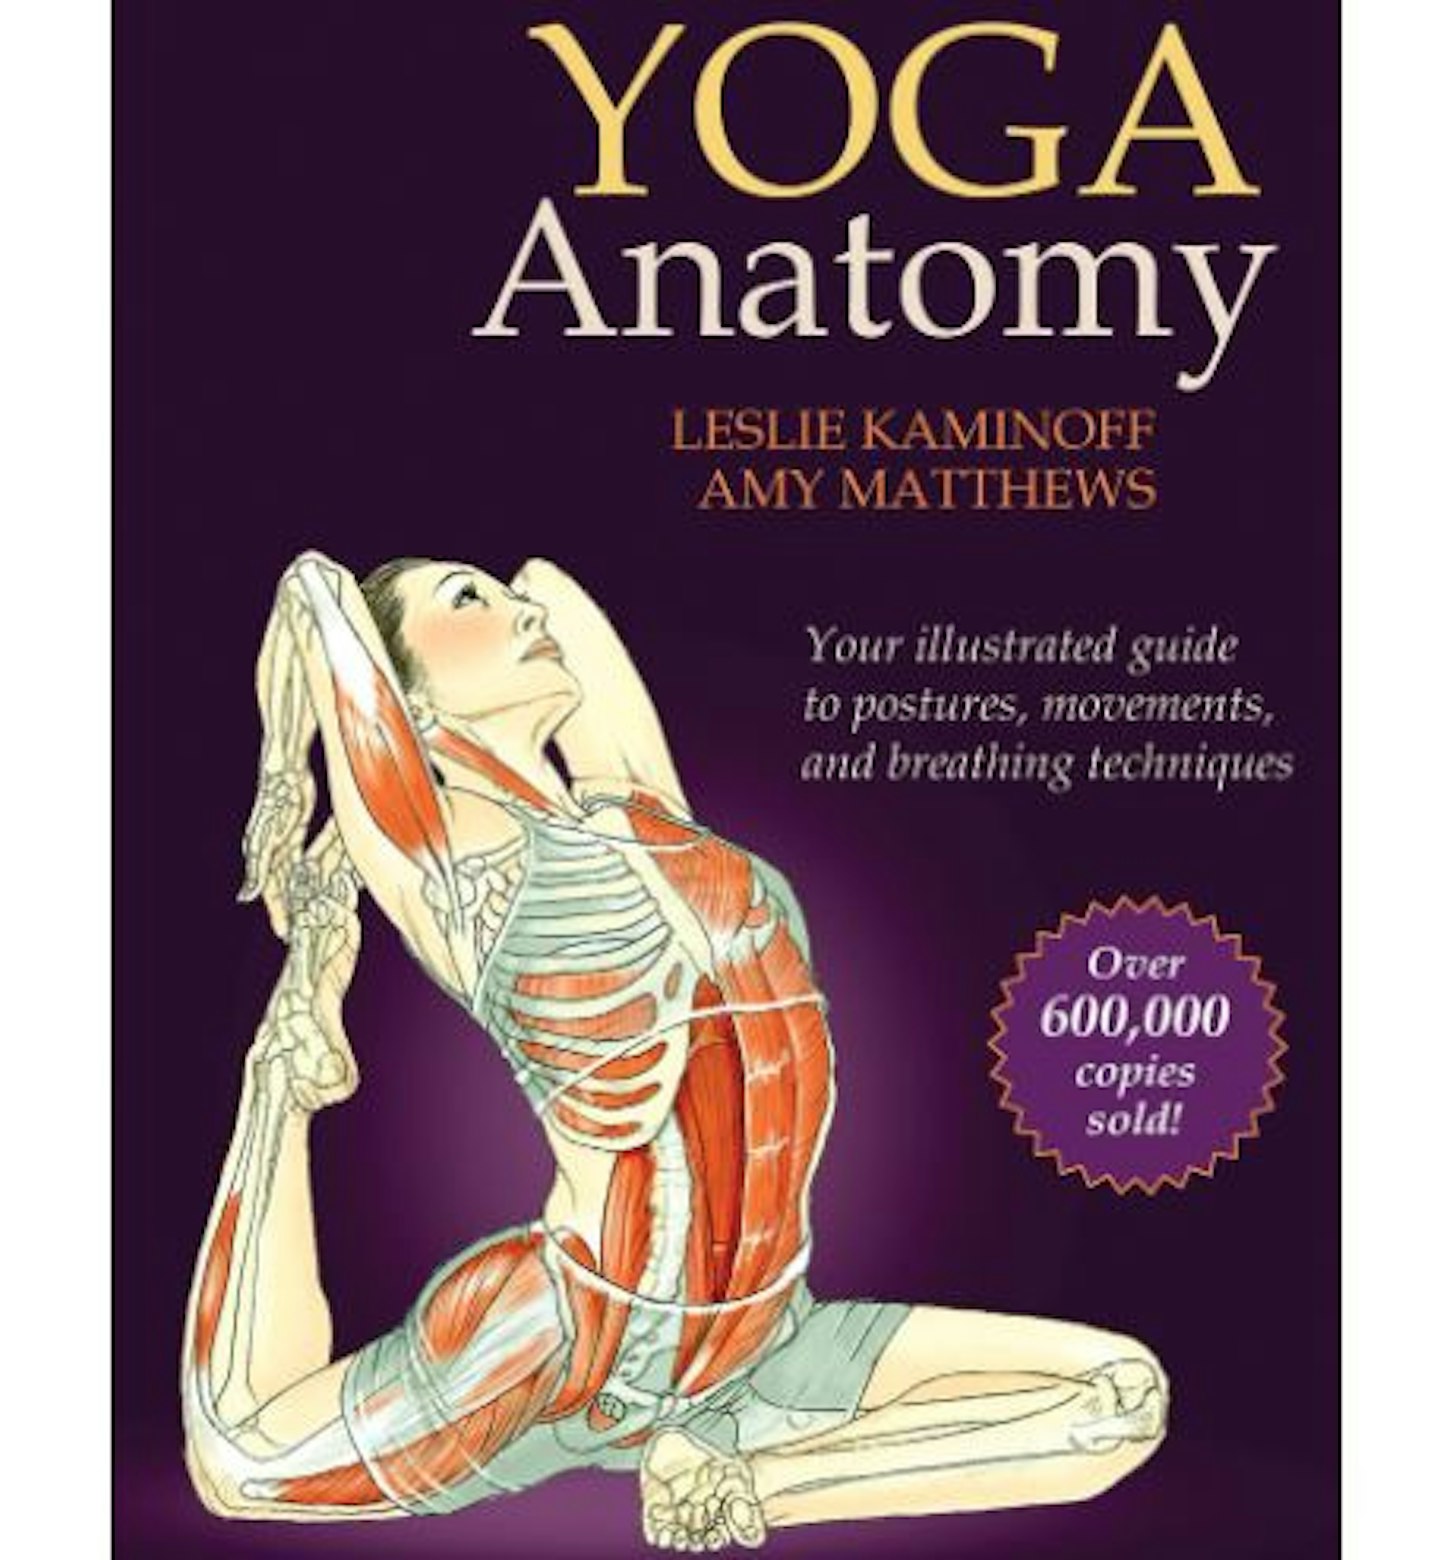 Yoga Anatomy u2013 Leslie Kaminoff